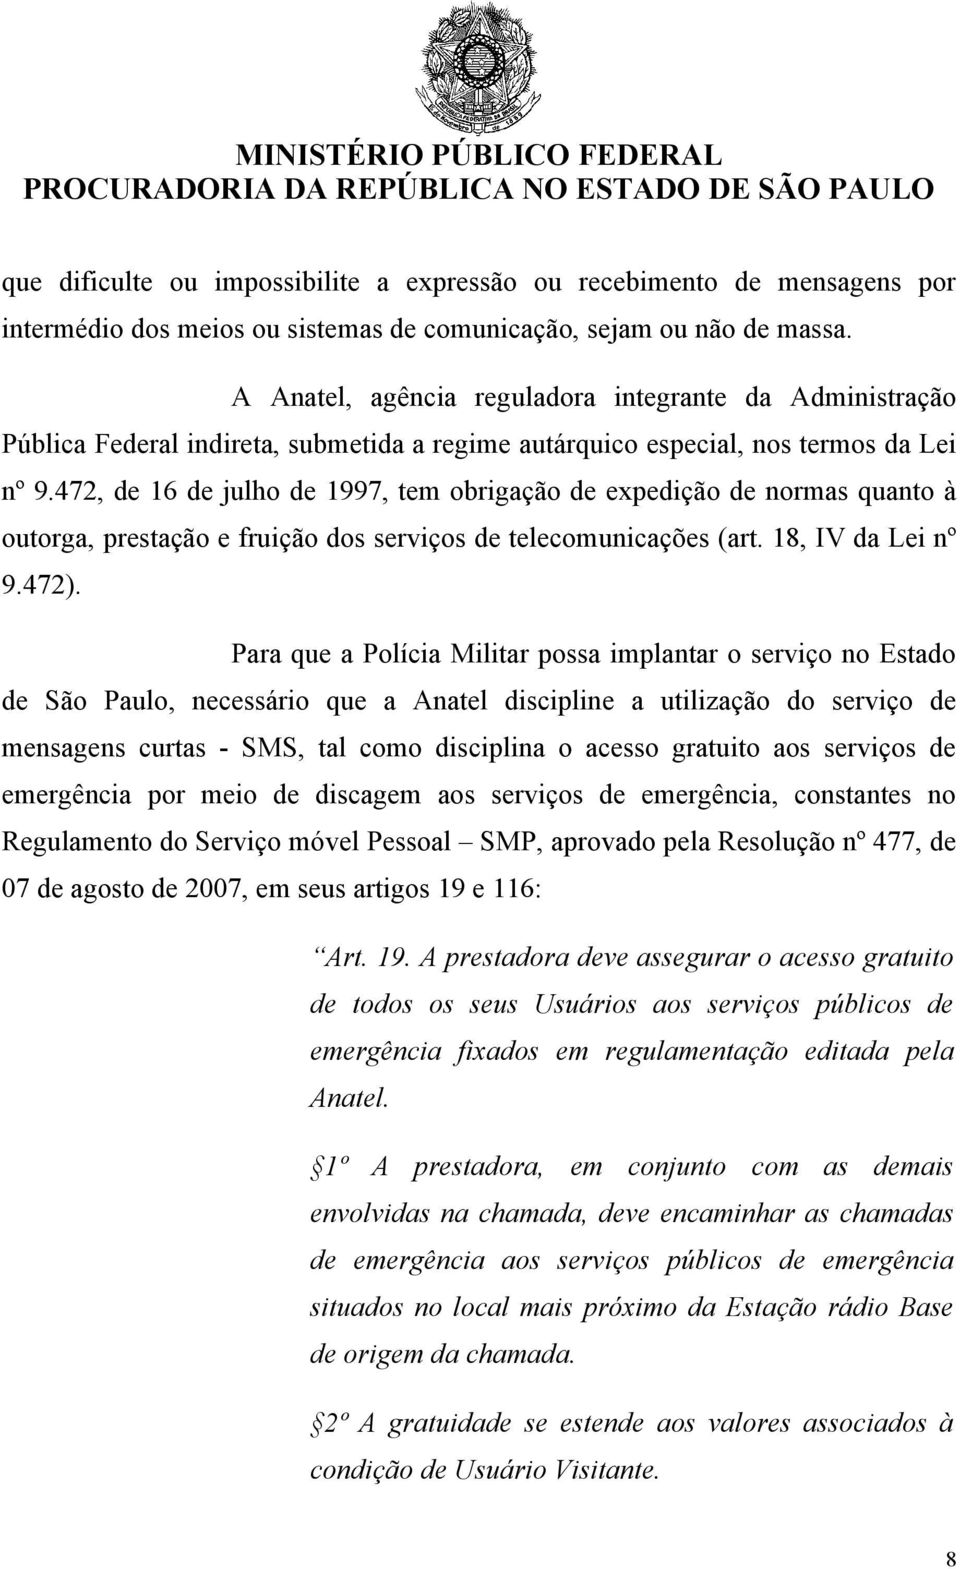 472, de 16 de julho de 1997, tem obrigação de expedição de normas quanto à outorga, prestação e fruição dos serviços de telecomunicações (art. 18, IV da Lei nº 9.472).